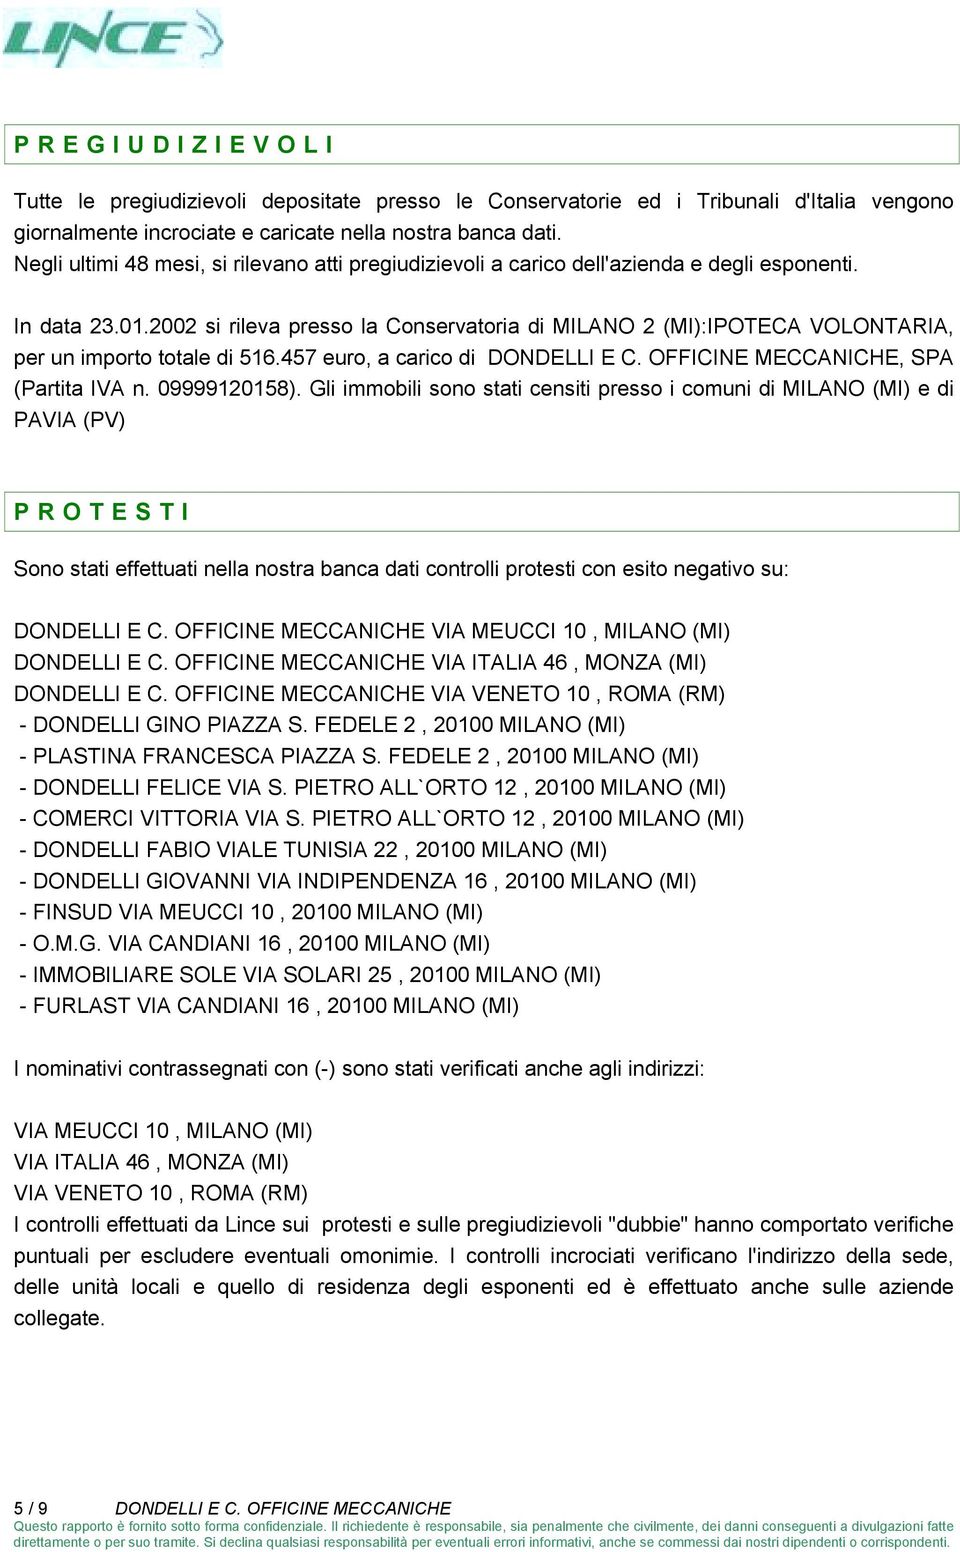 2002 si rileva presso la Conservatoria di MILANO 2 (MI):IPOTECA VOLONTARIA, per un importo totale di 516.457 euro, a carico di DONDELLI E C. OFFICINE MECCANICHE, SPA (Partita IVA n. 09999120158).